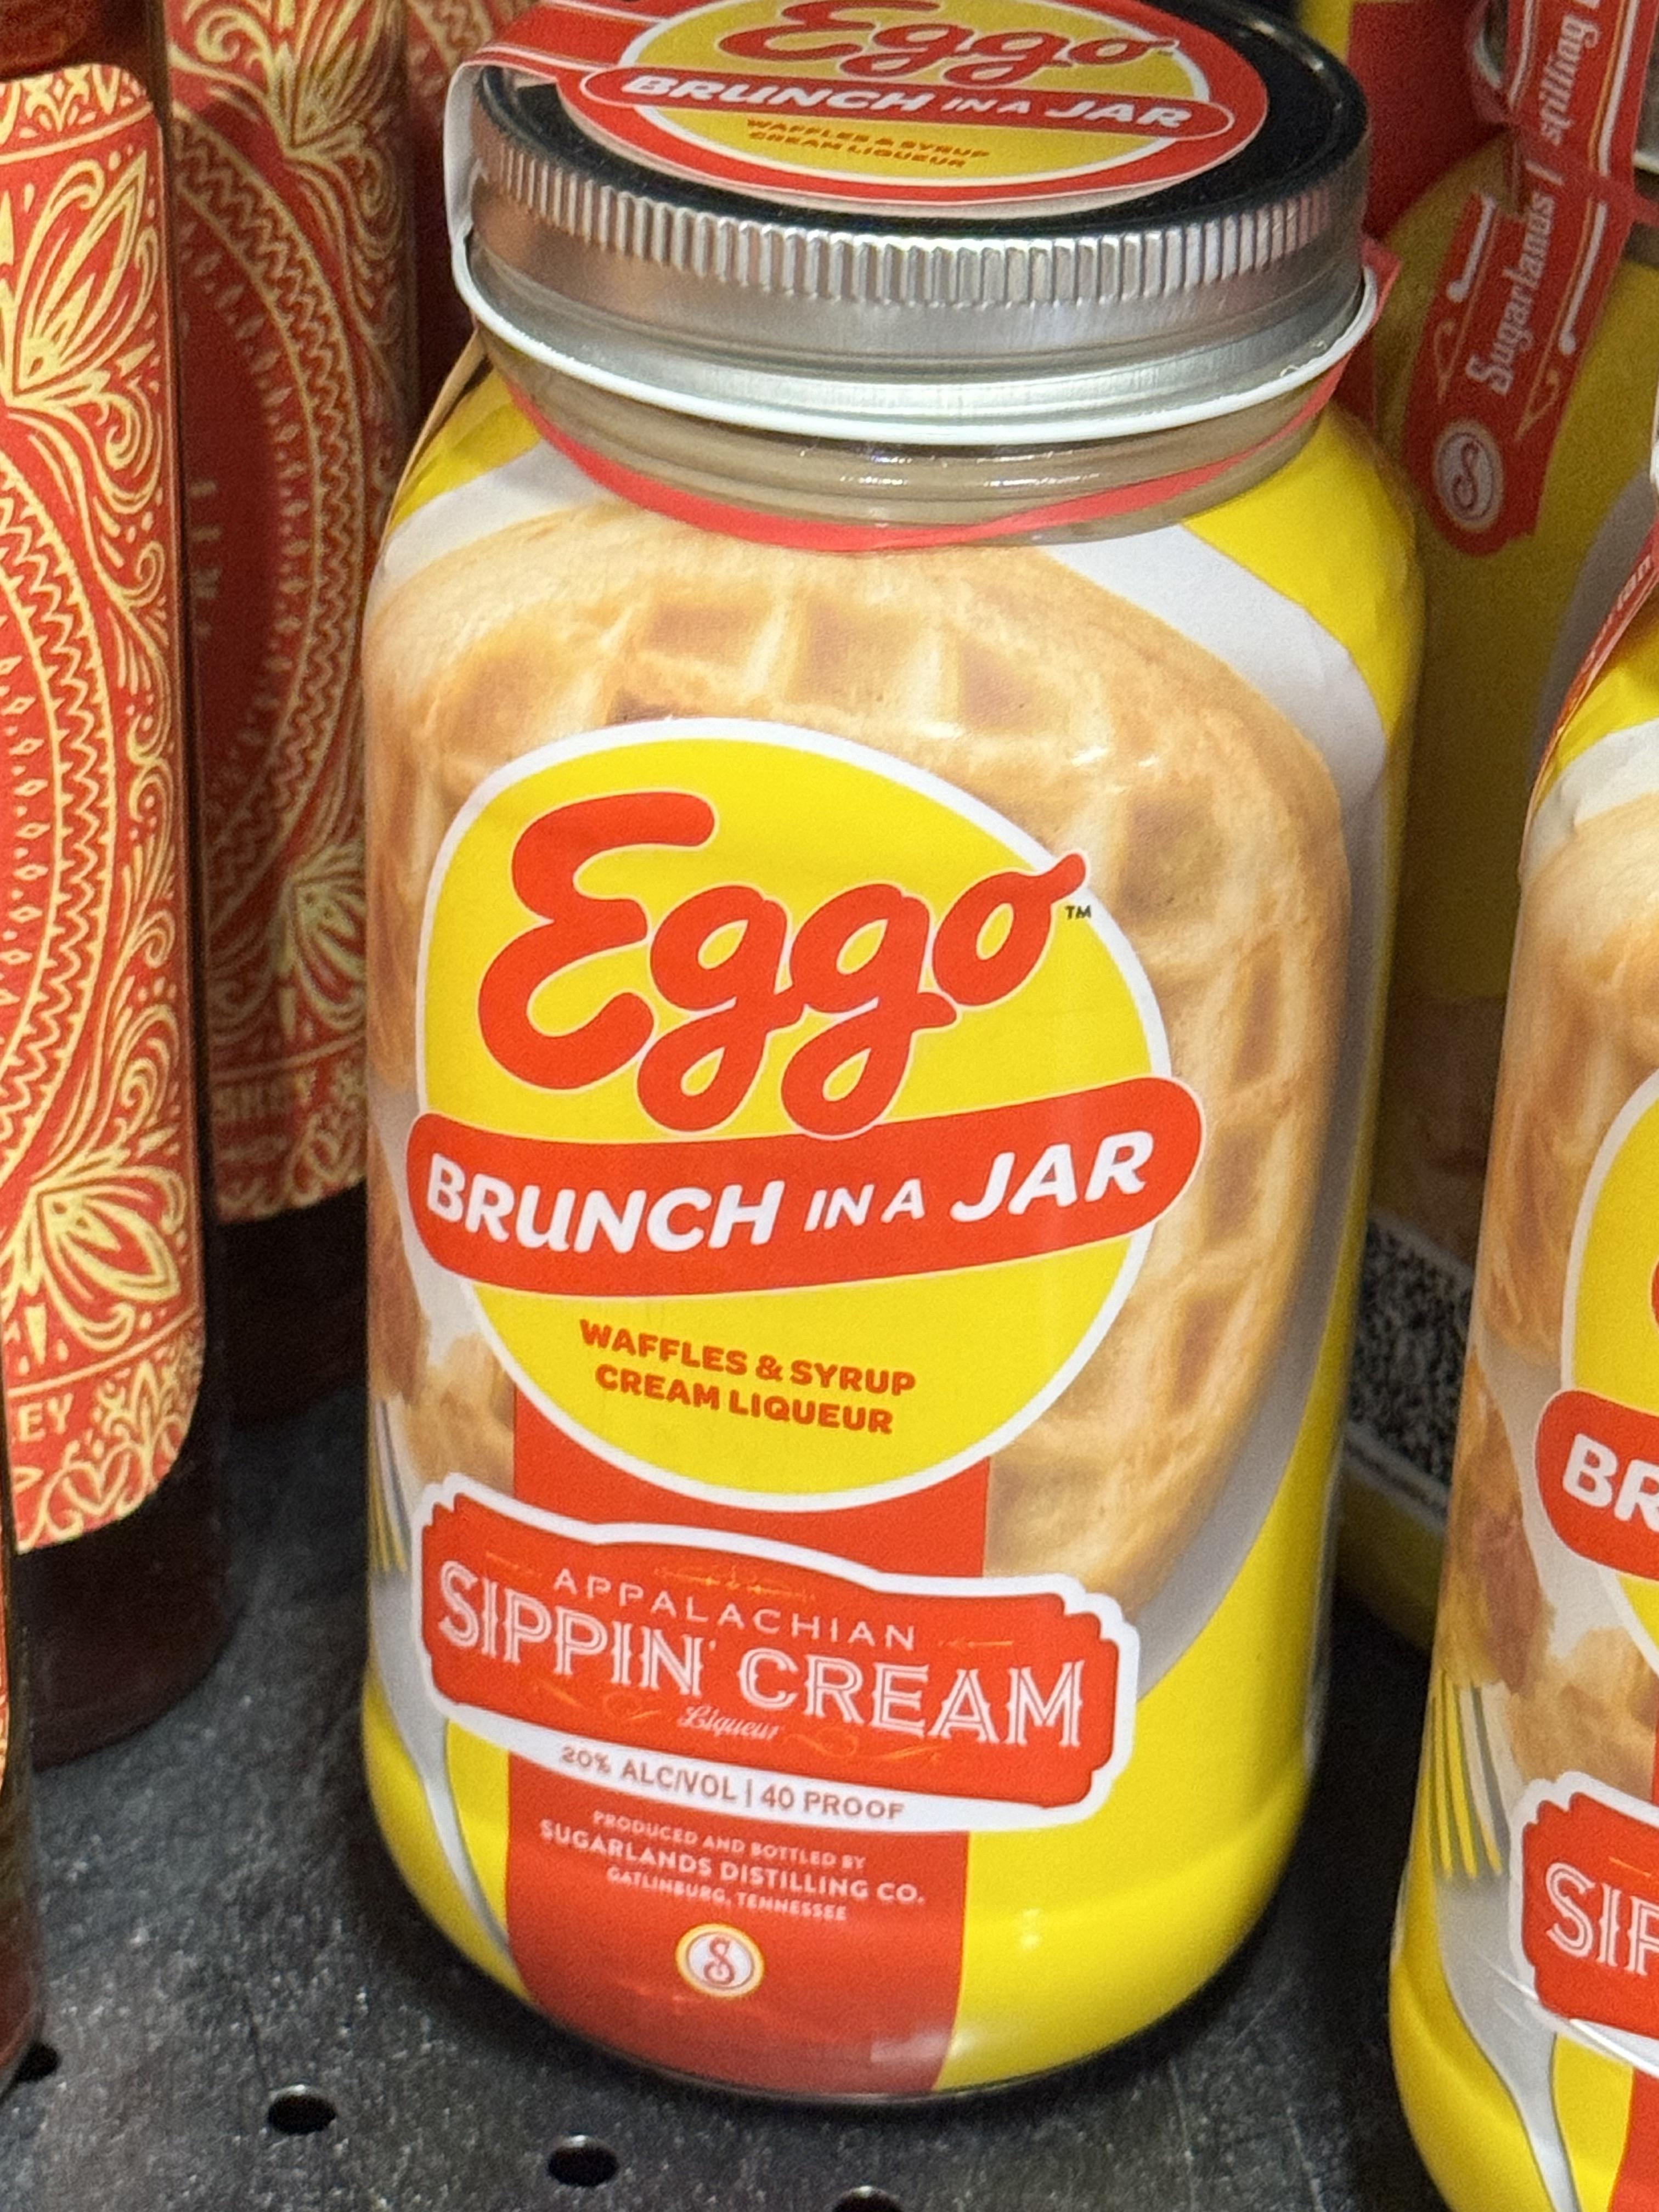 this-40-proof-eggo-brunch-in-a-jar-i-saw-at-a-liquor-store-v0-j24pqgvfftqb1.jpg